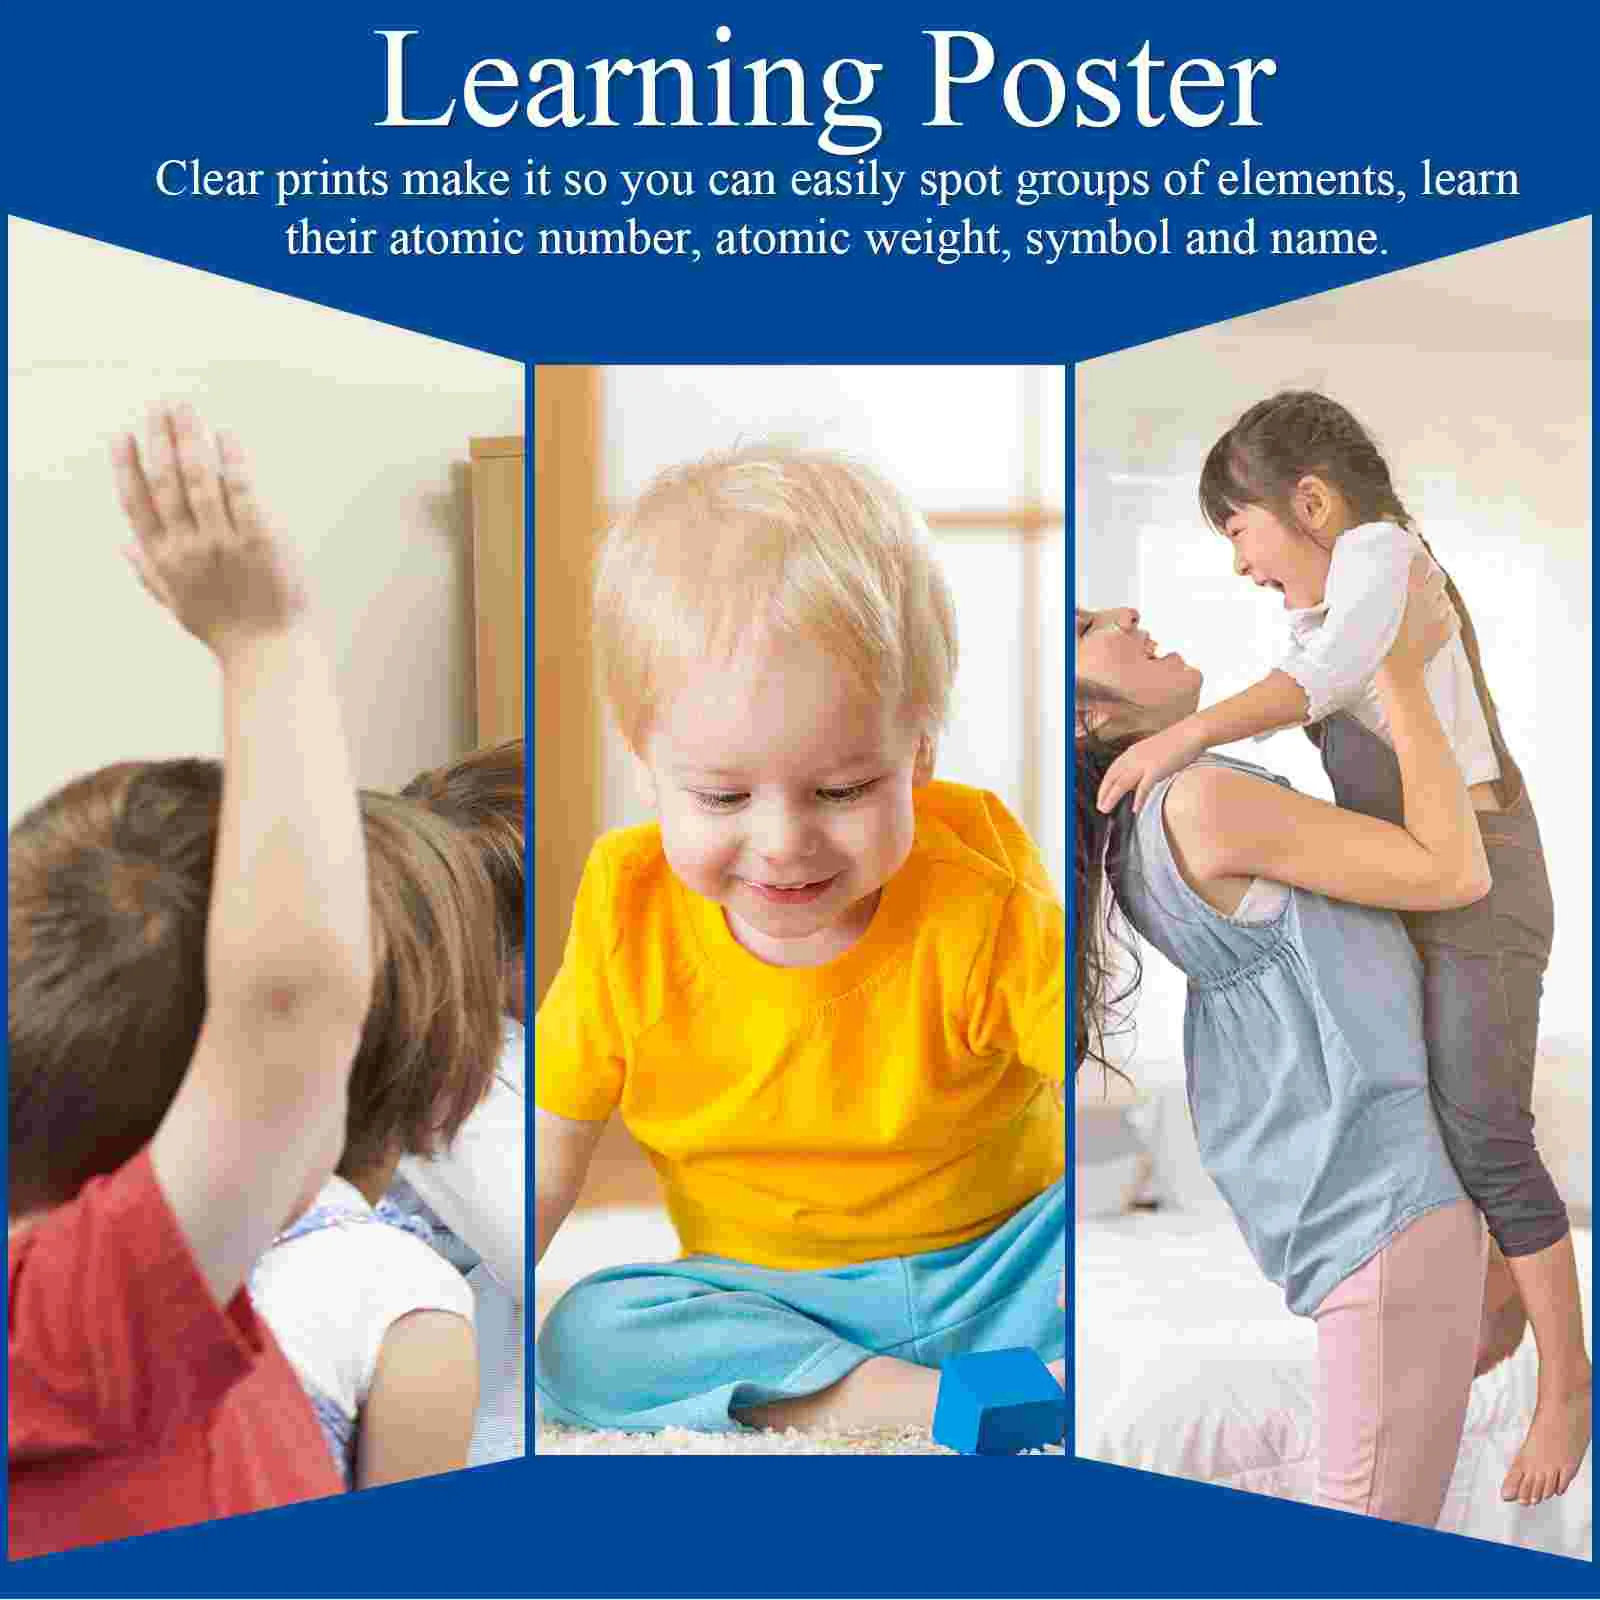 Плакат с элементами периодической таблицы для дошкольного обучения, детские образовательные плакаты, научный баннер, учебные элементы, Классная таблица